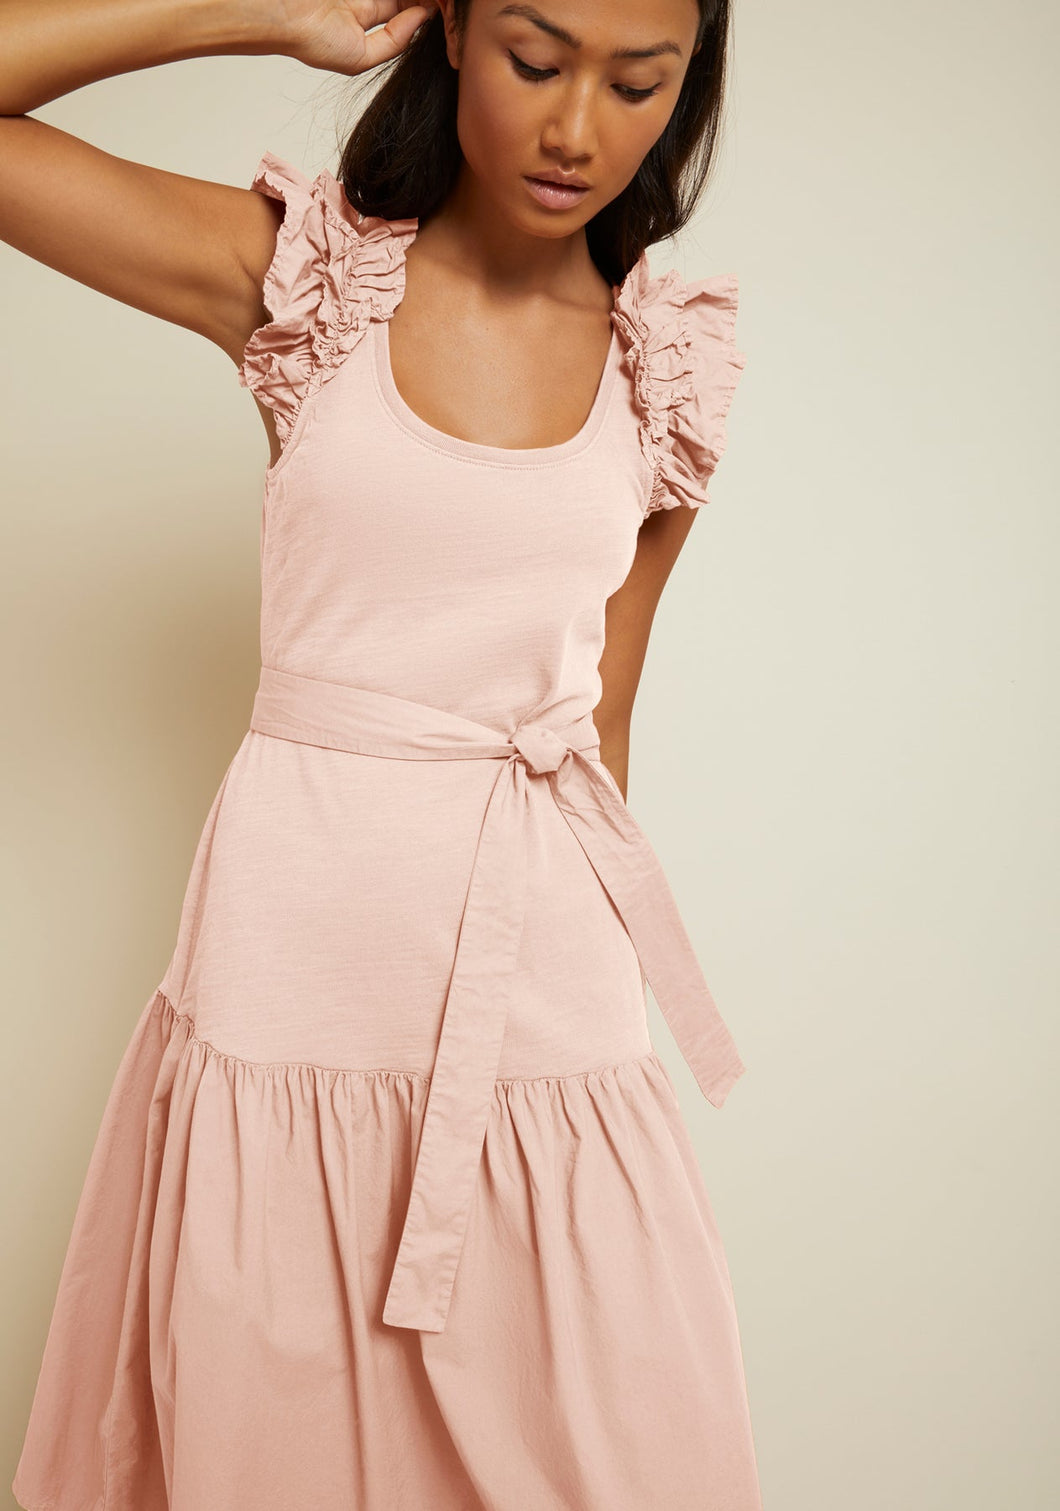 Everleigh Frilly Dress - Light Pink